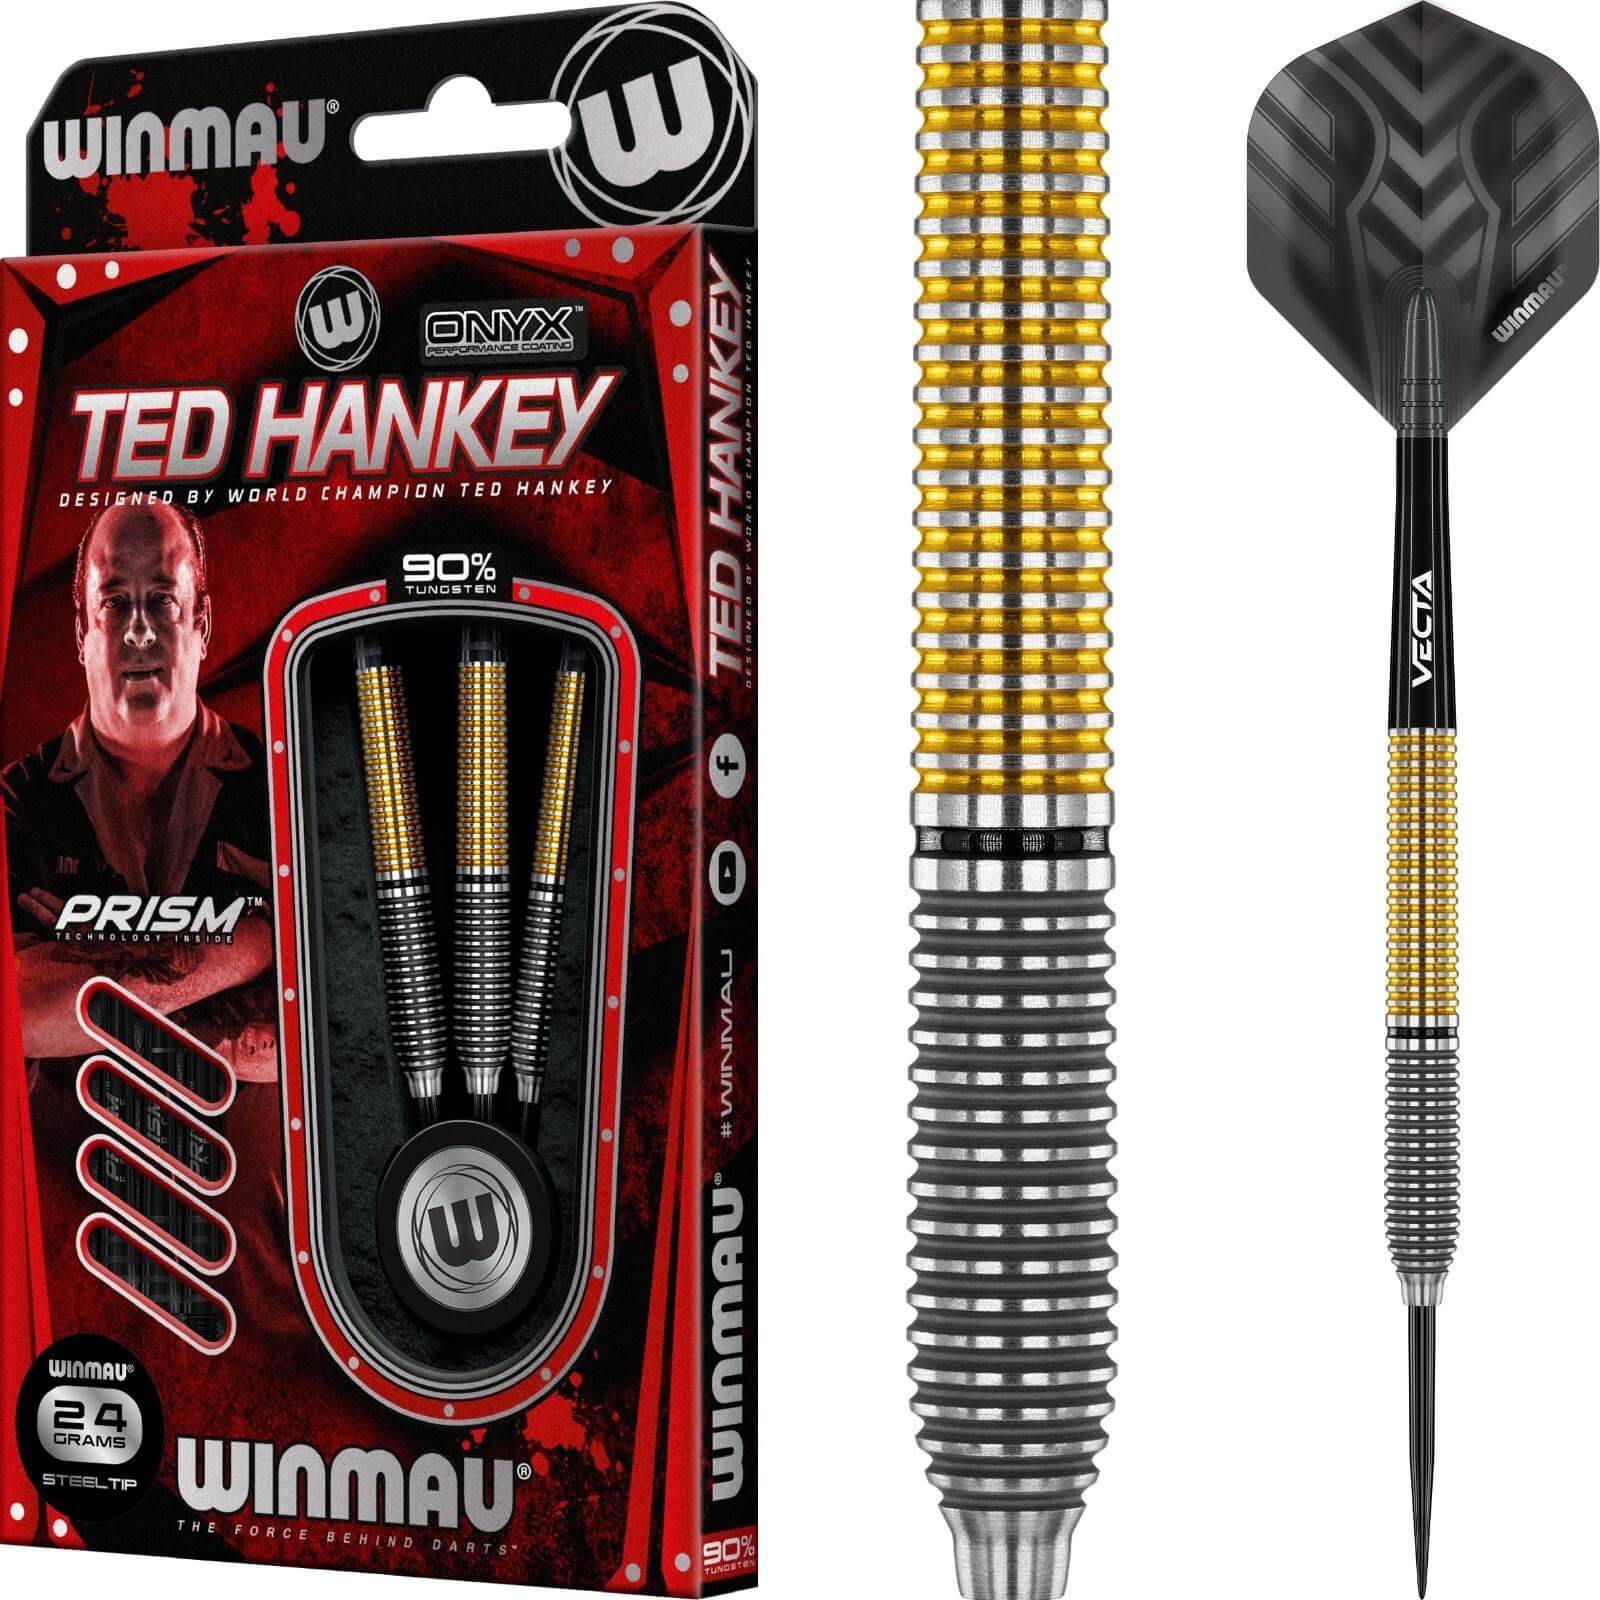 Darts - Winmau - Ted Hankey SE Darts - Steel Tip - 90% Tungsten - 24g 